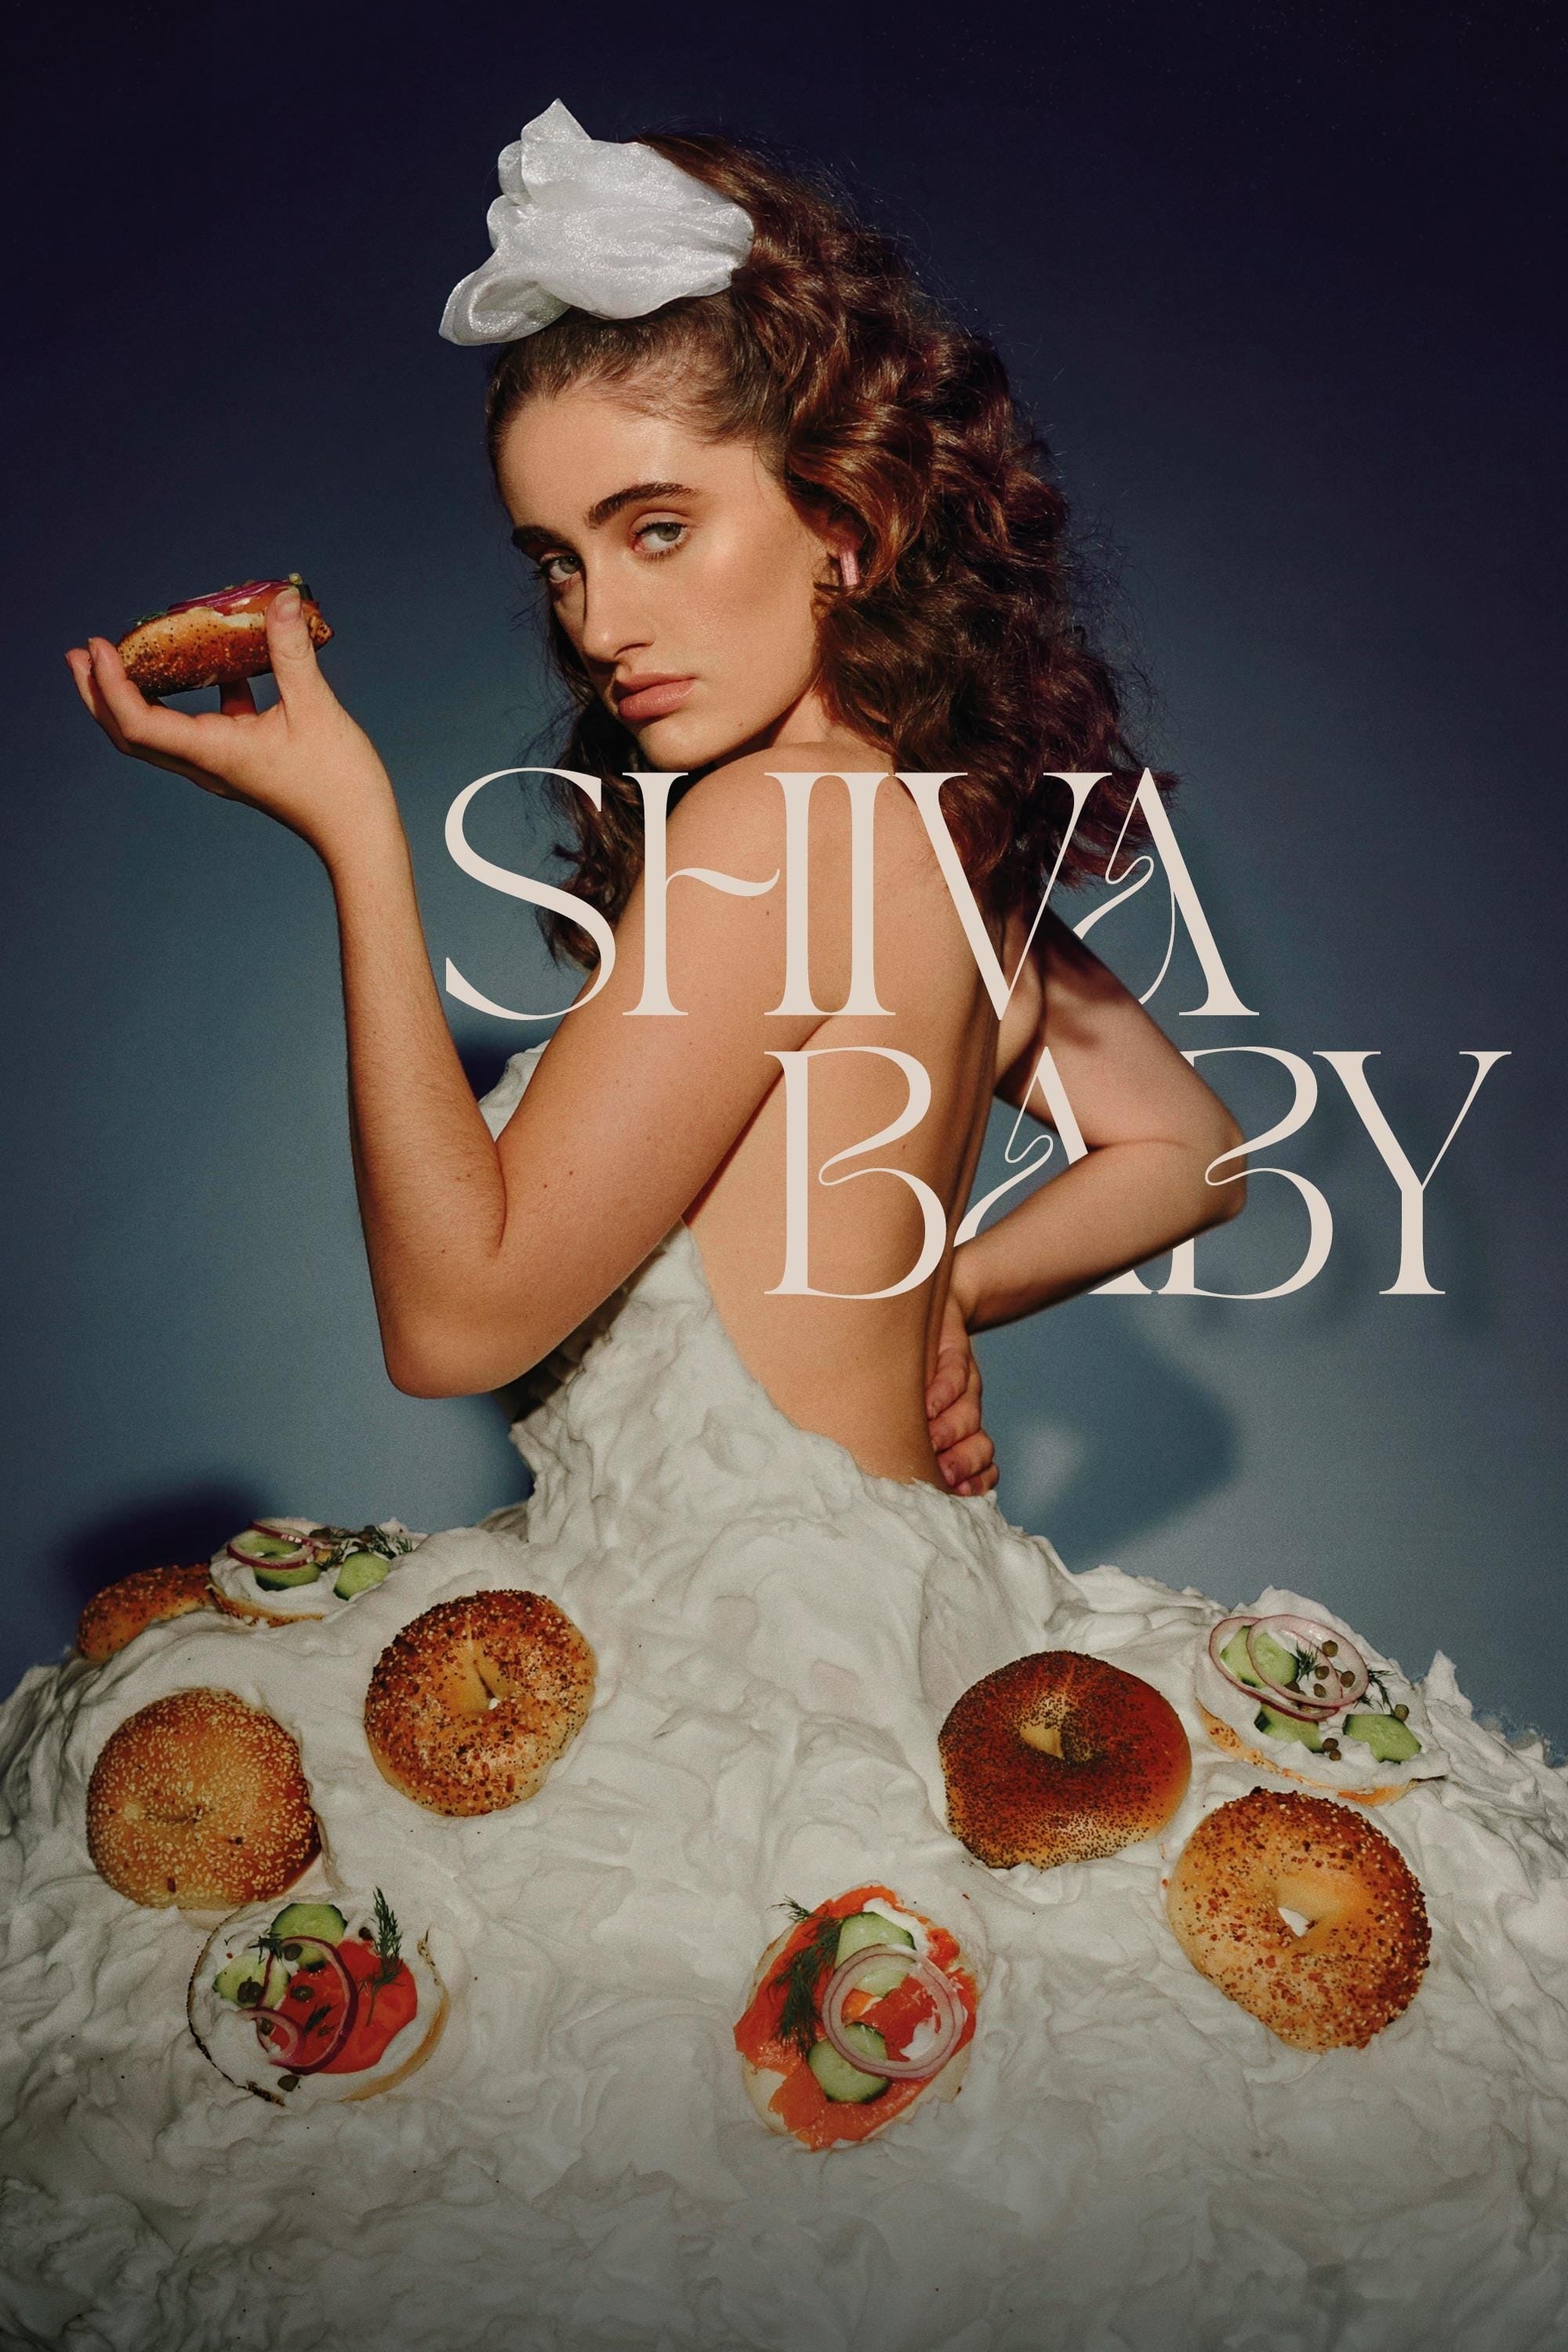 Shiva Baby Movie poster